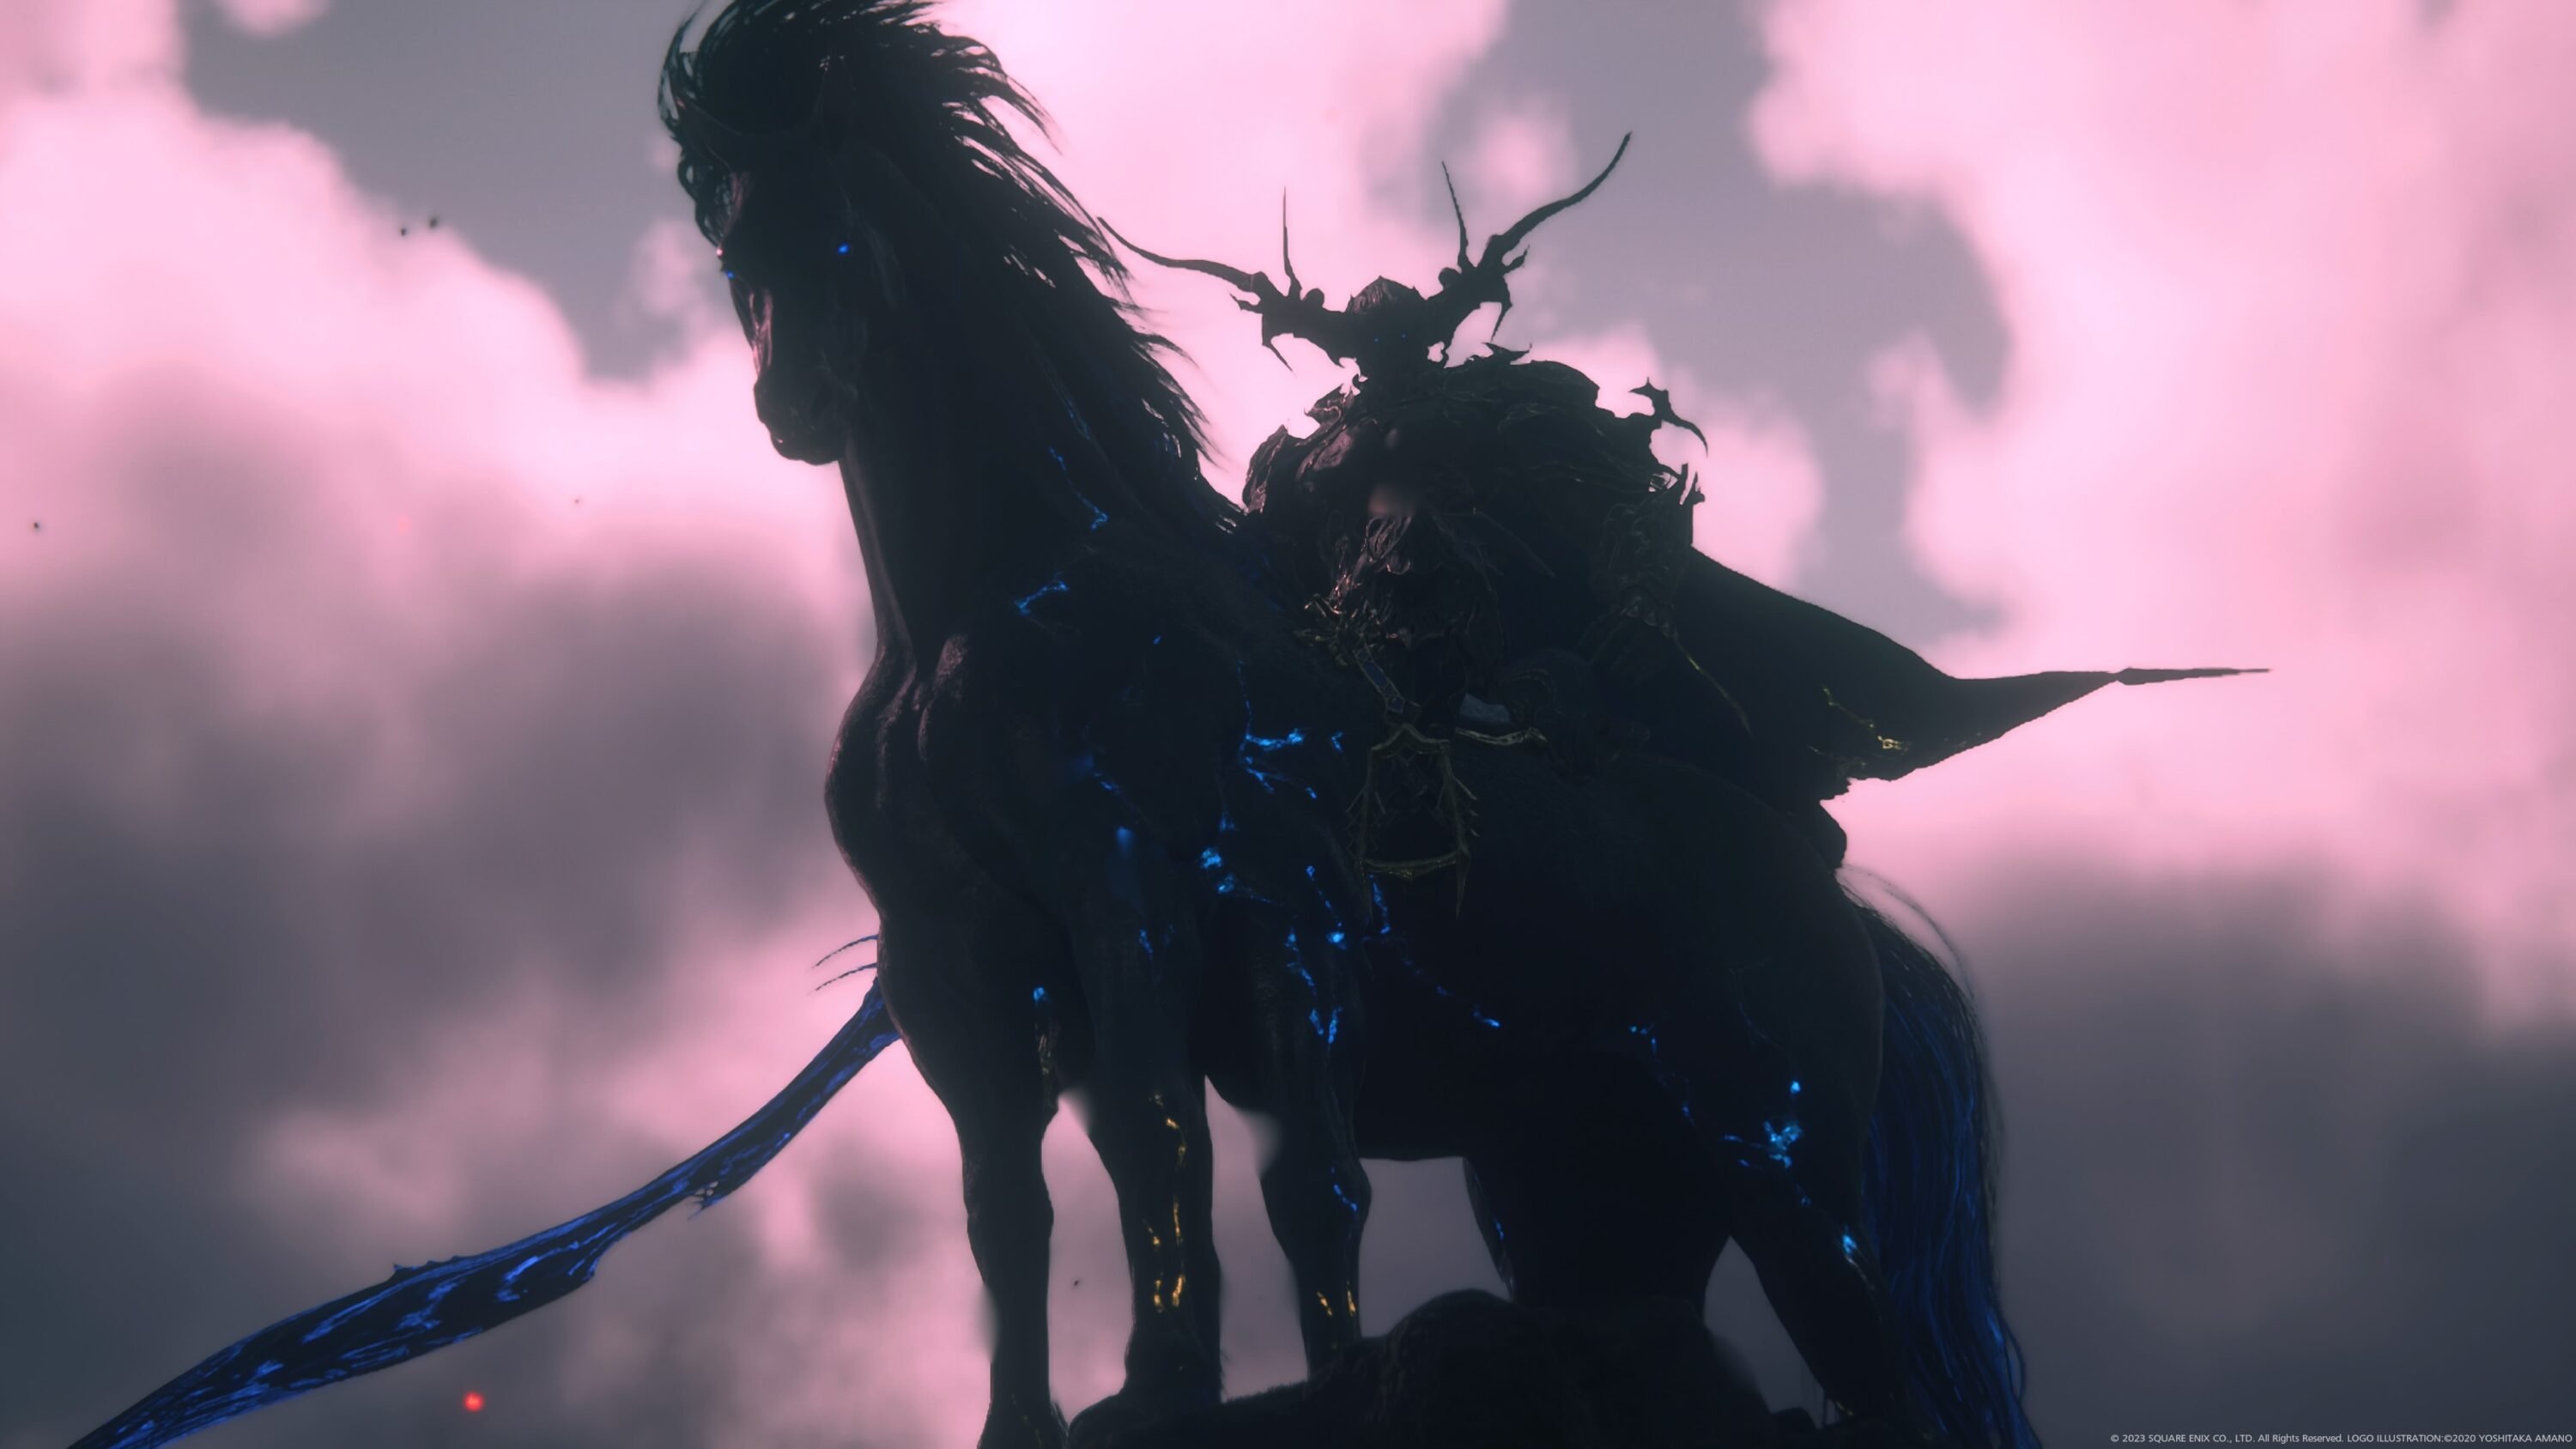 Final Fantasy XVI: a nossa opinião sobre o novo jogo da saga da